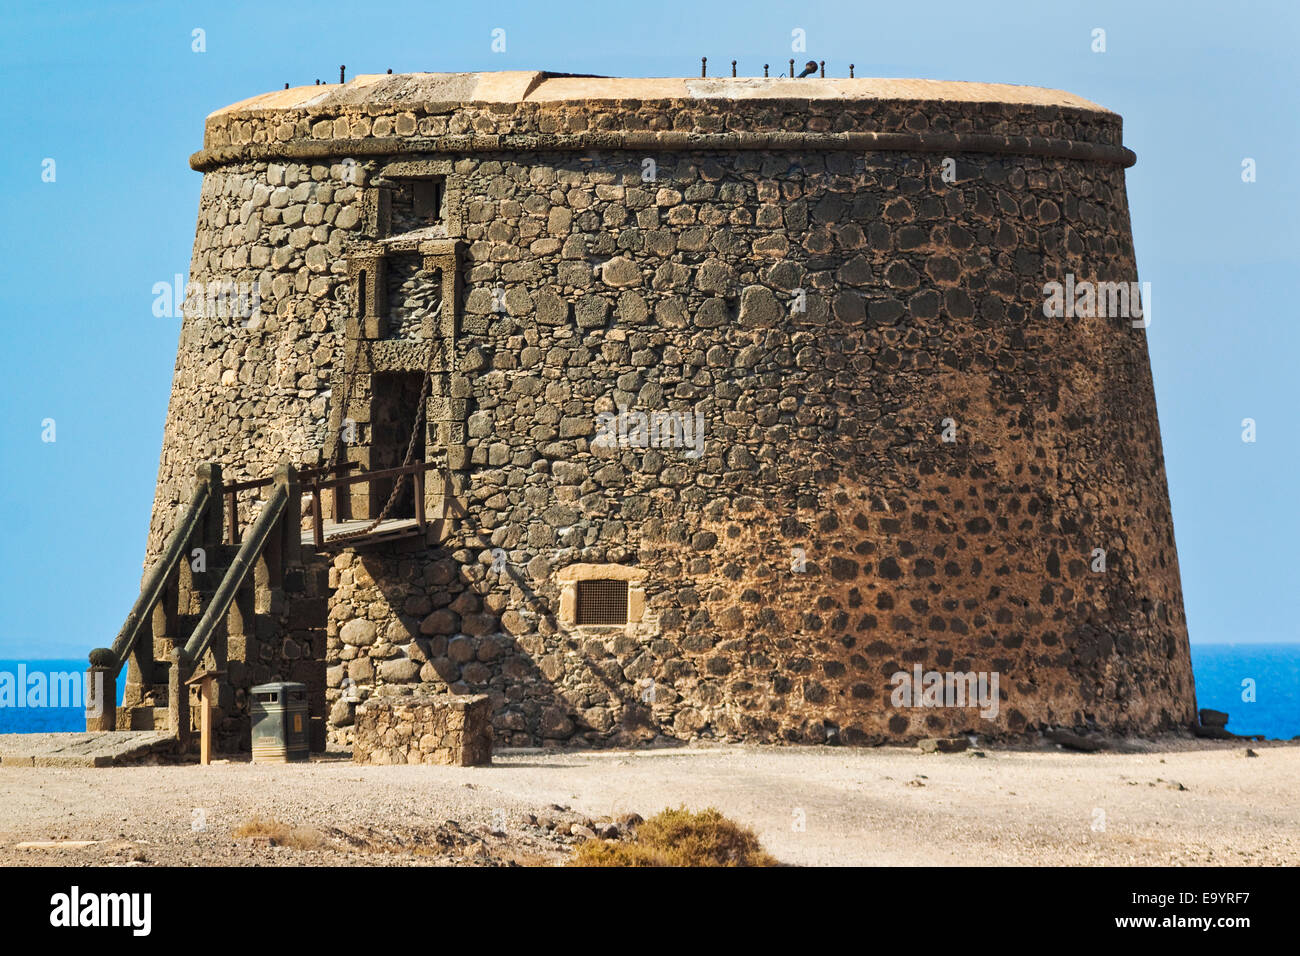 Alter Turm (Toston) gegen englische Piraten in diesem NW Küste Dorf zu verteidigen; El Cotillo, Fuerteventura, Kanarische Inseln, Spanien Stockfoto